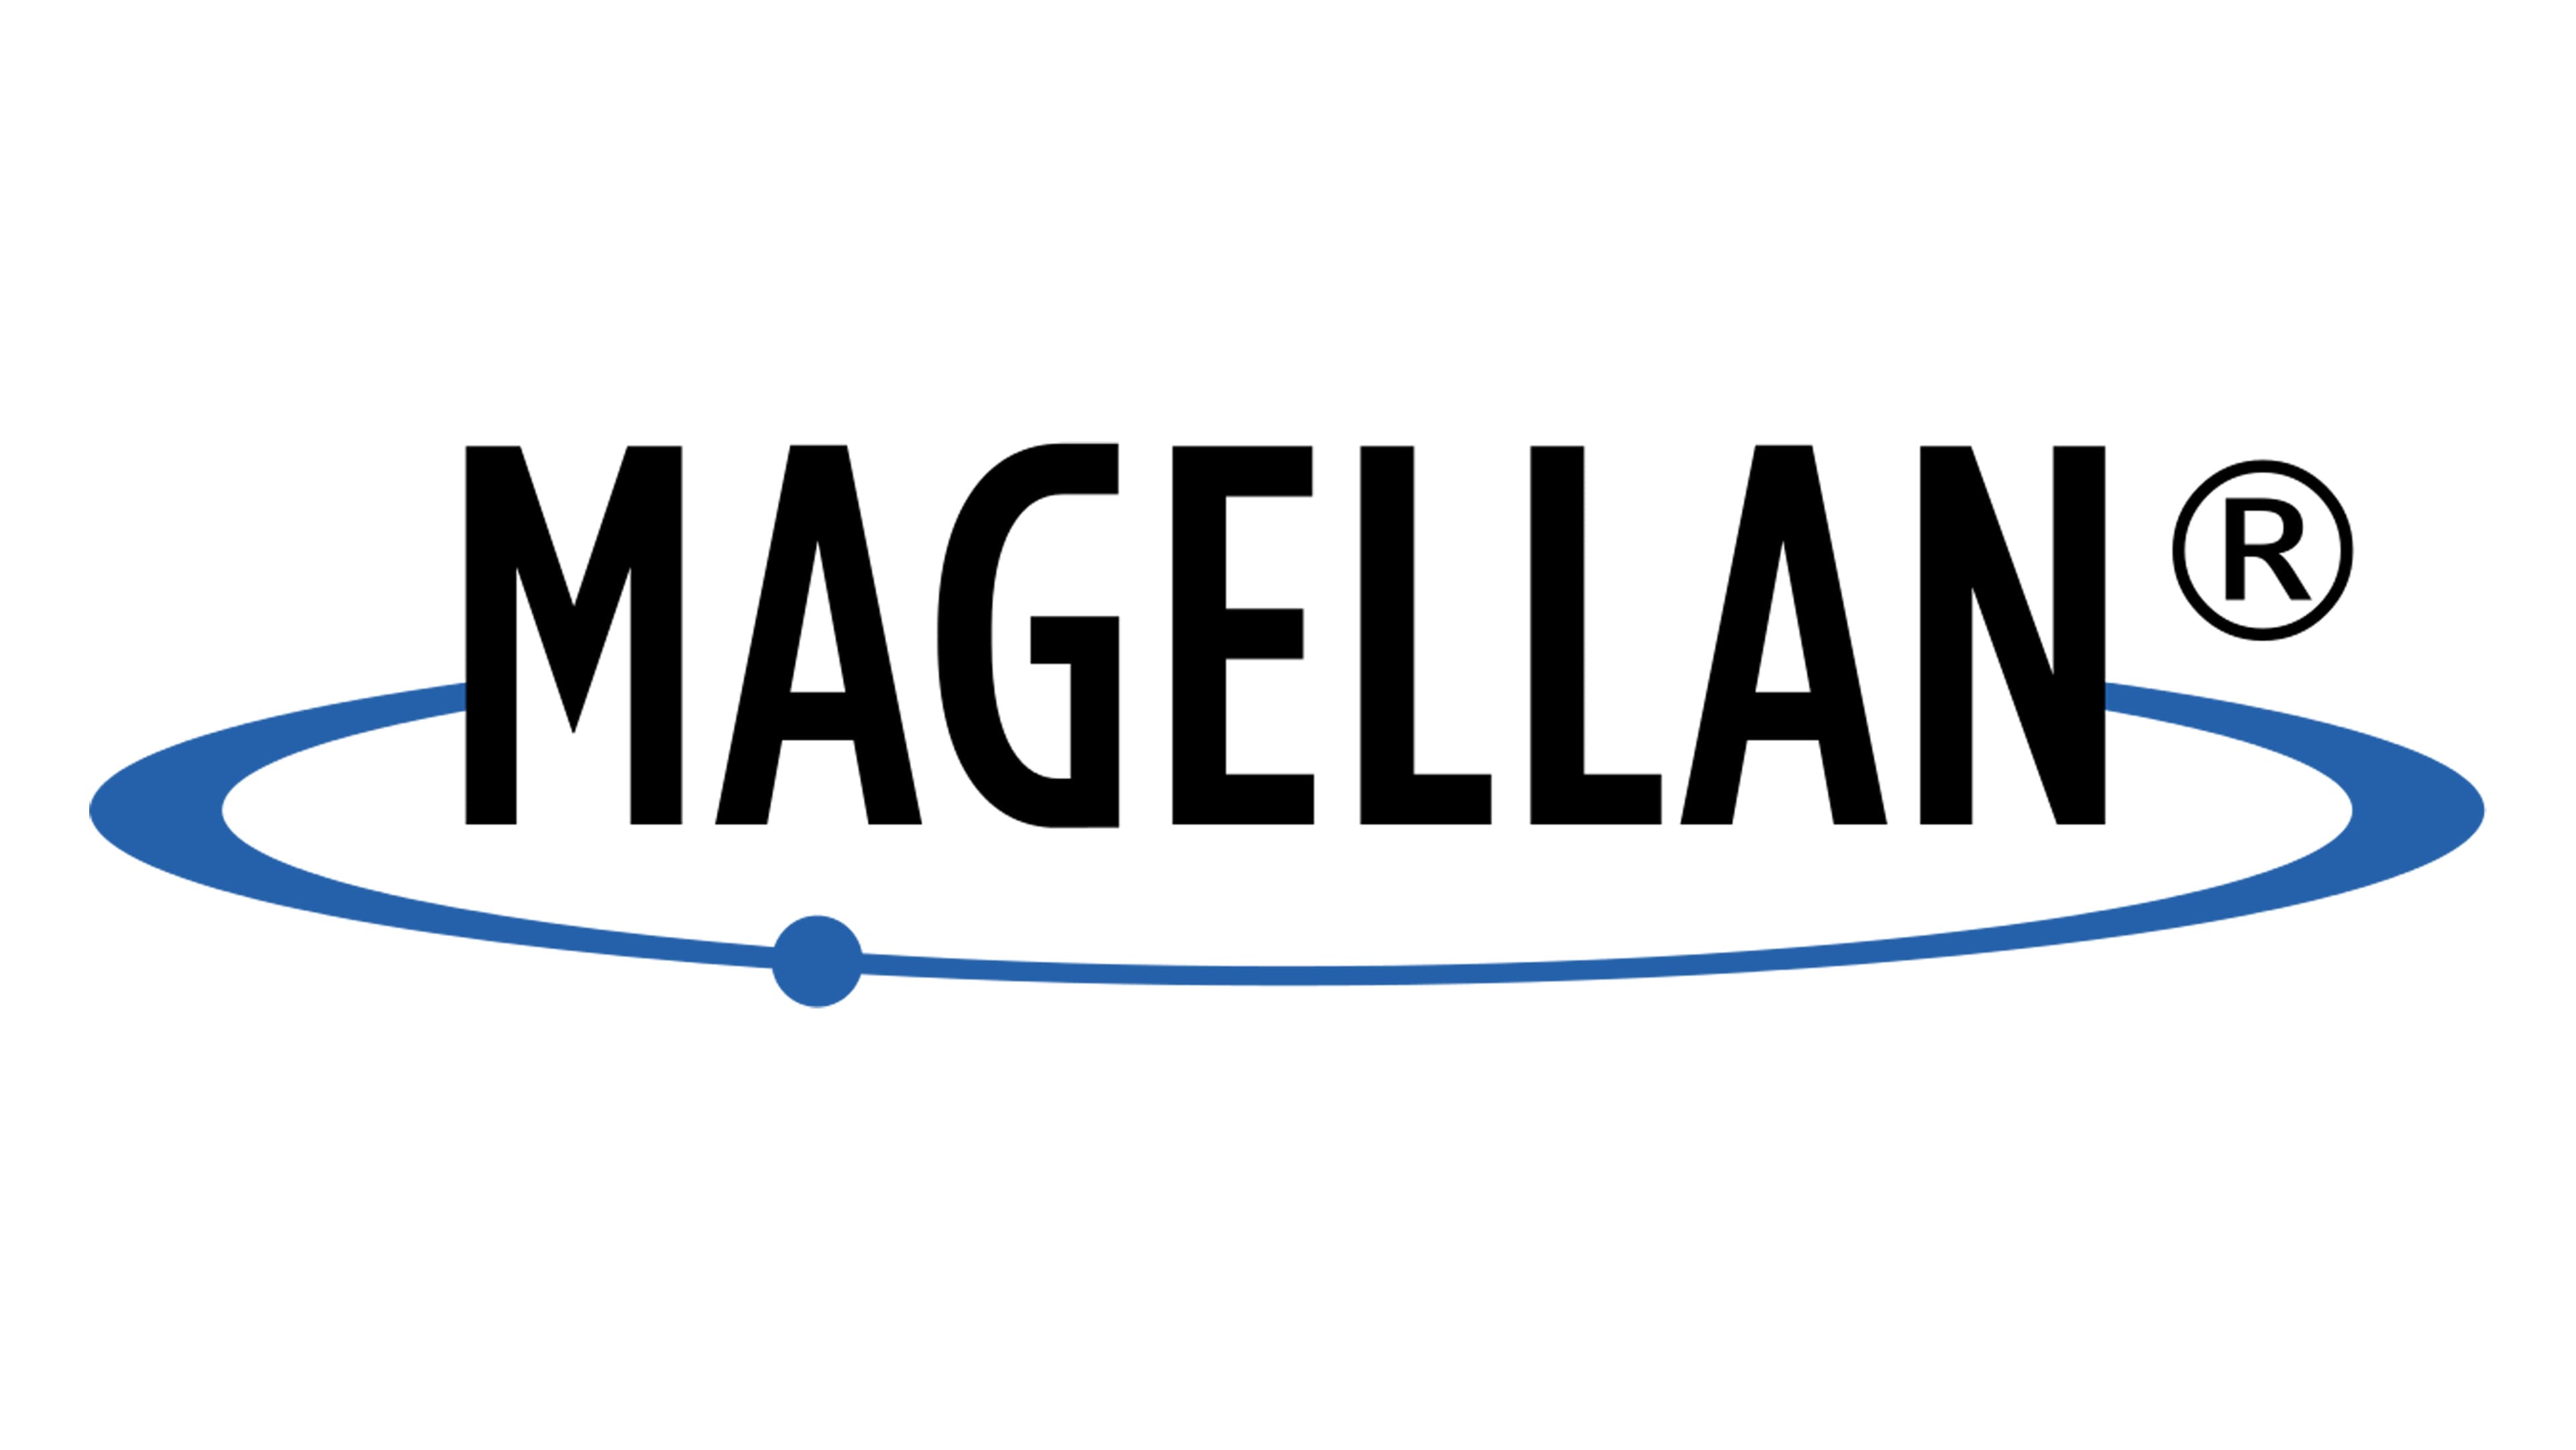 Magellan Rent A Car company